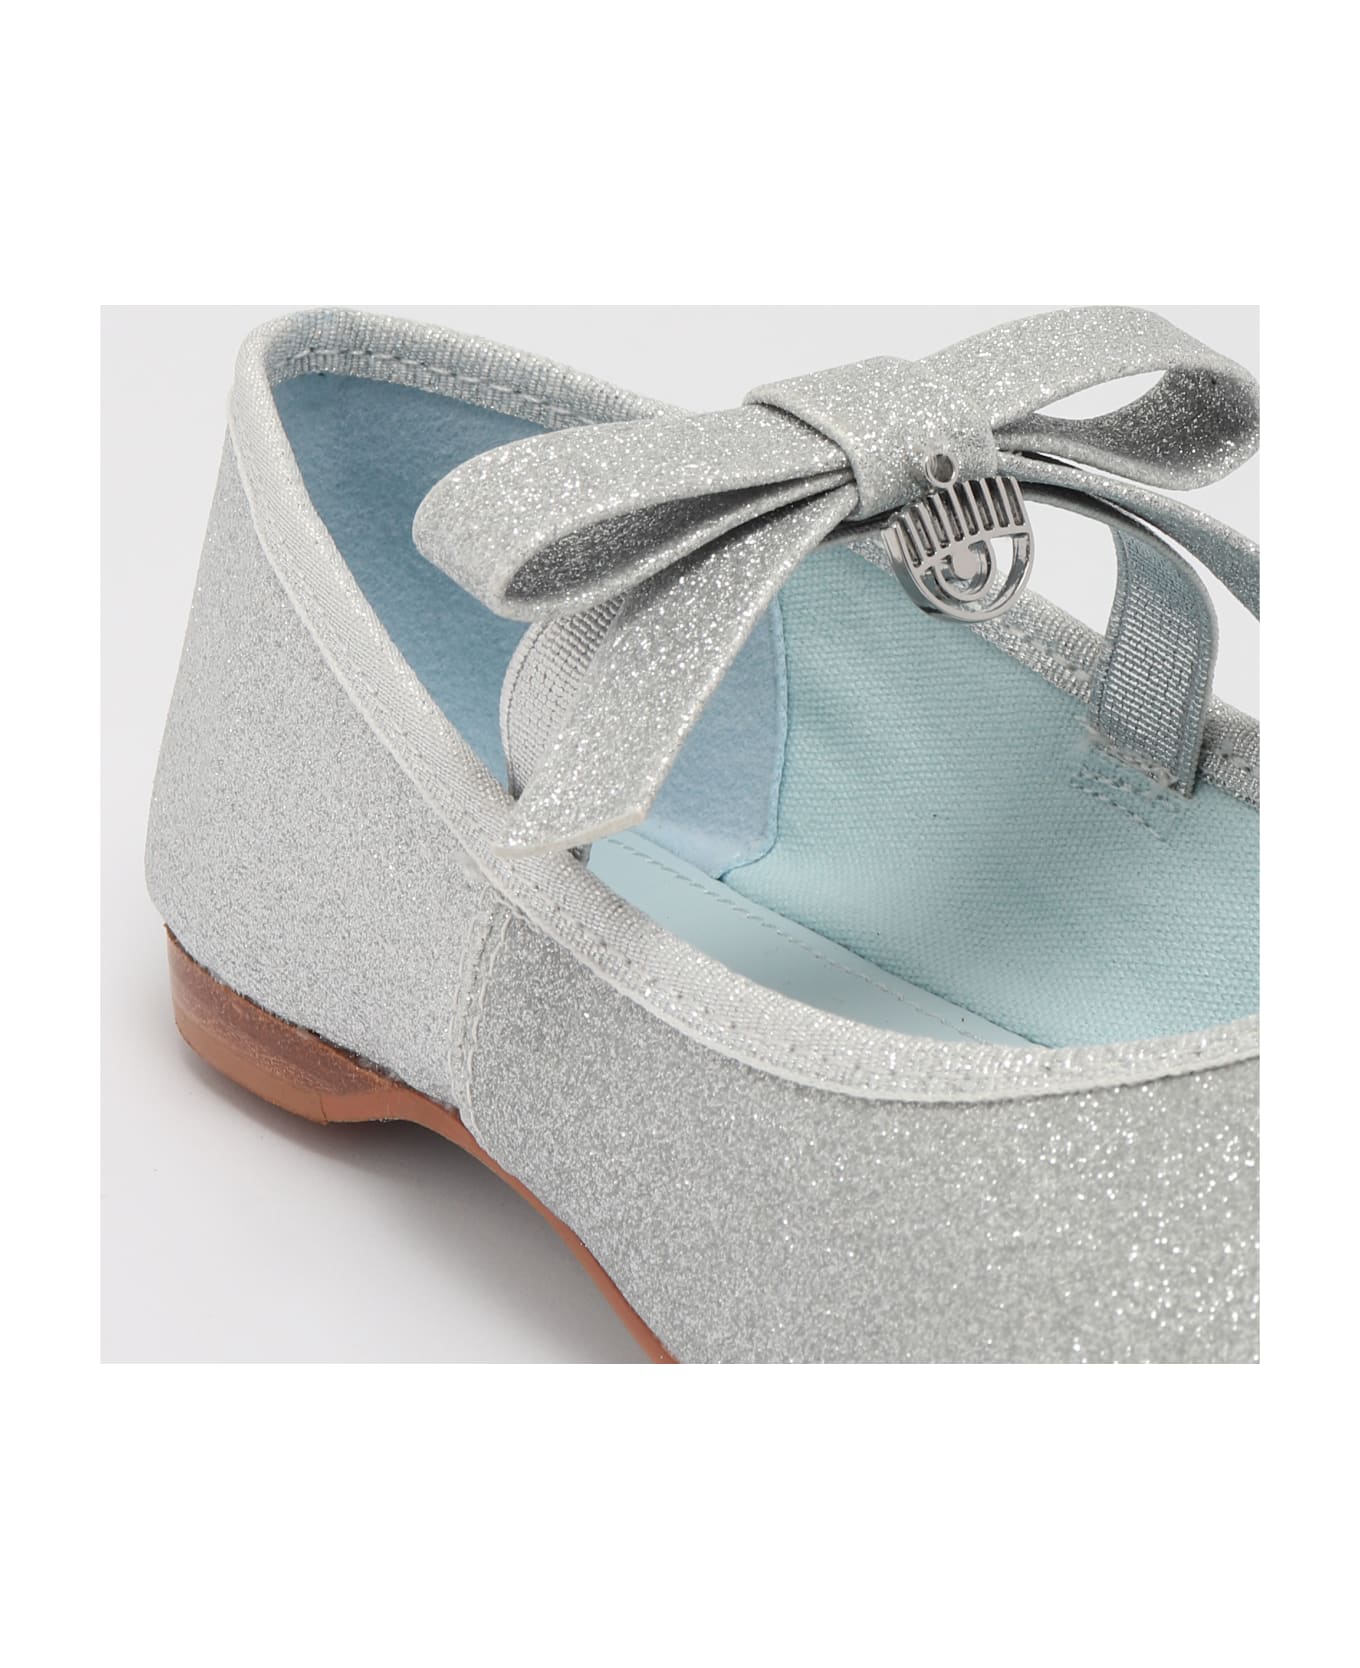 Chiara Ferragni Cf Ballet Shoes Flat Shoes - SILVER シューズ